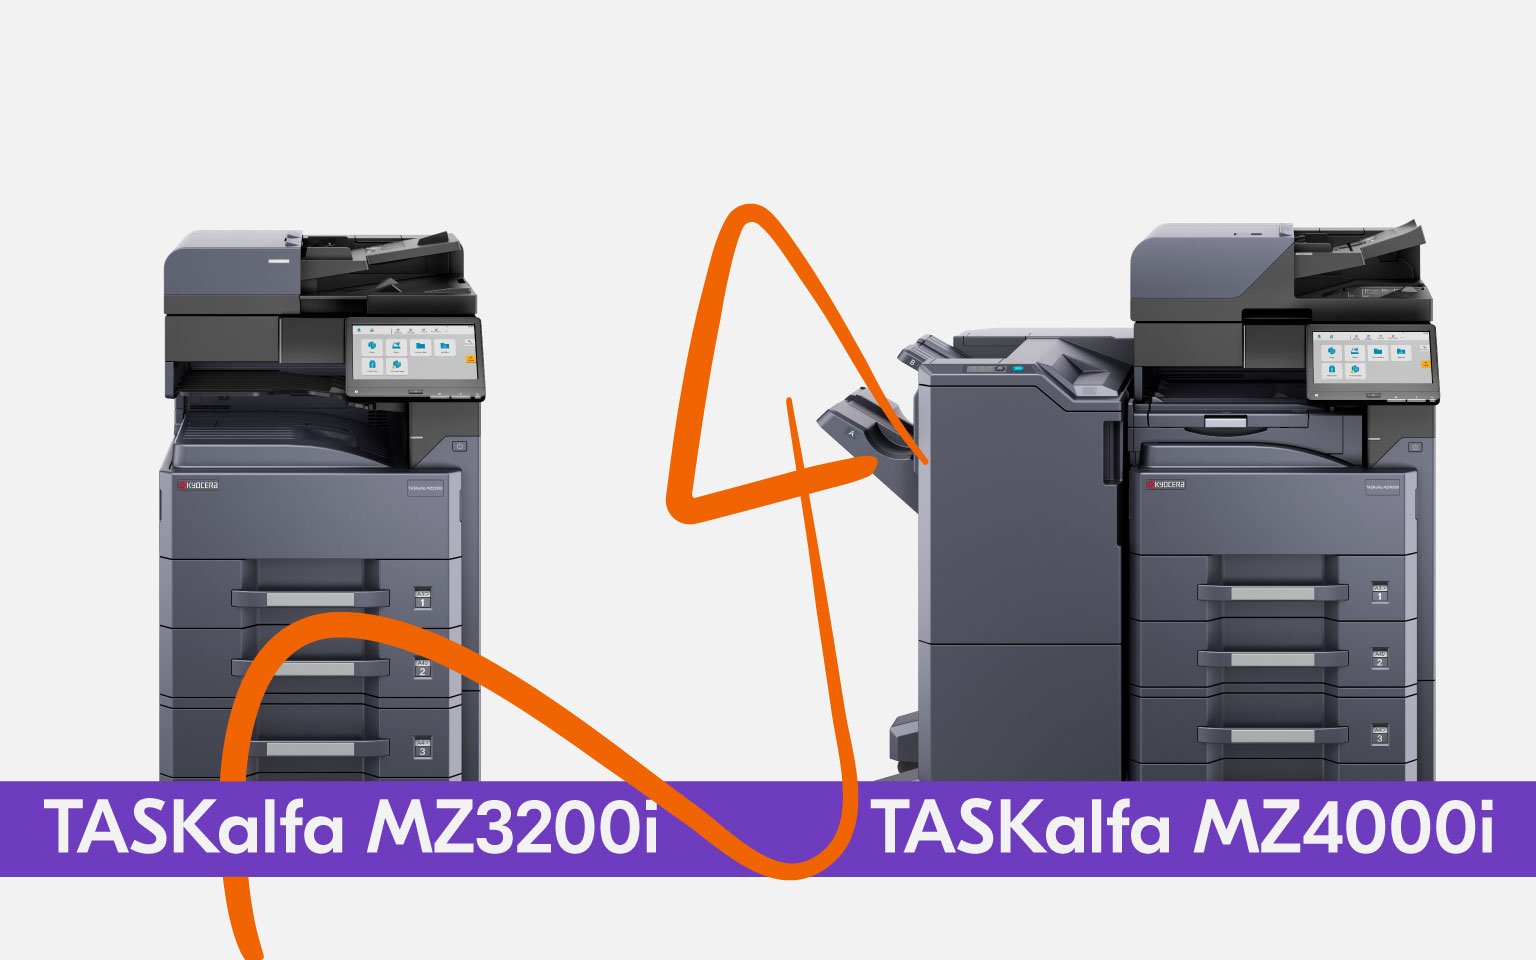 TASKalfa MZ3200i and TASKalfa MZ4000i